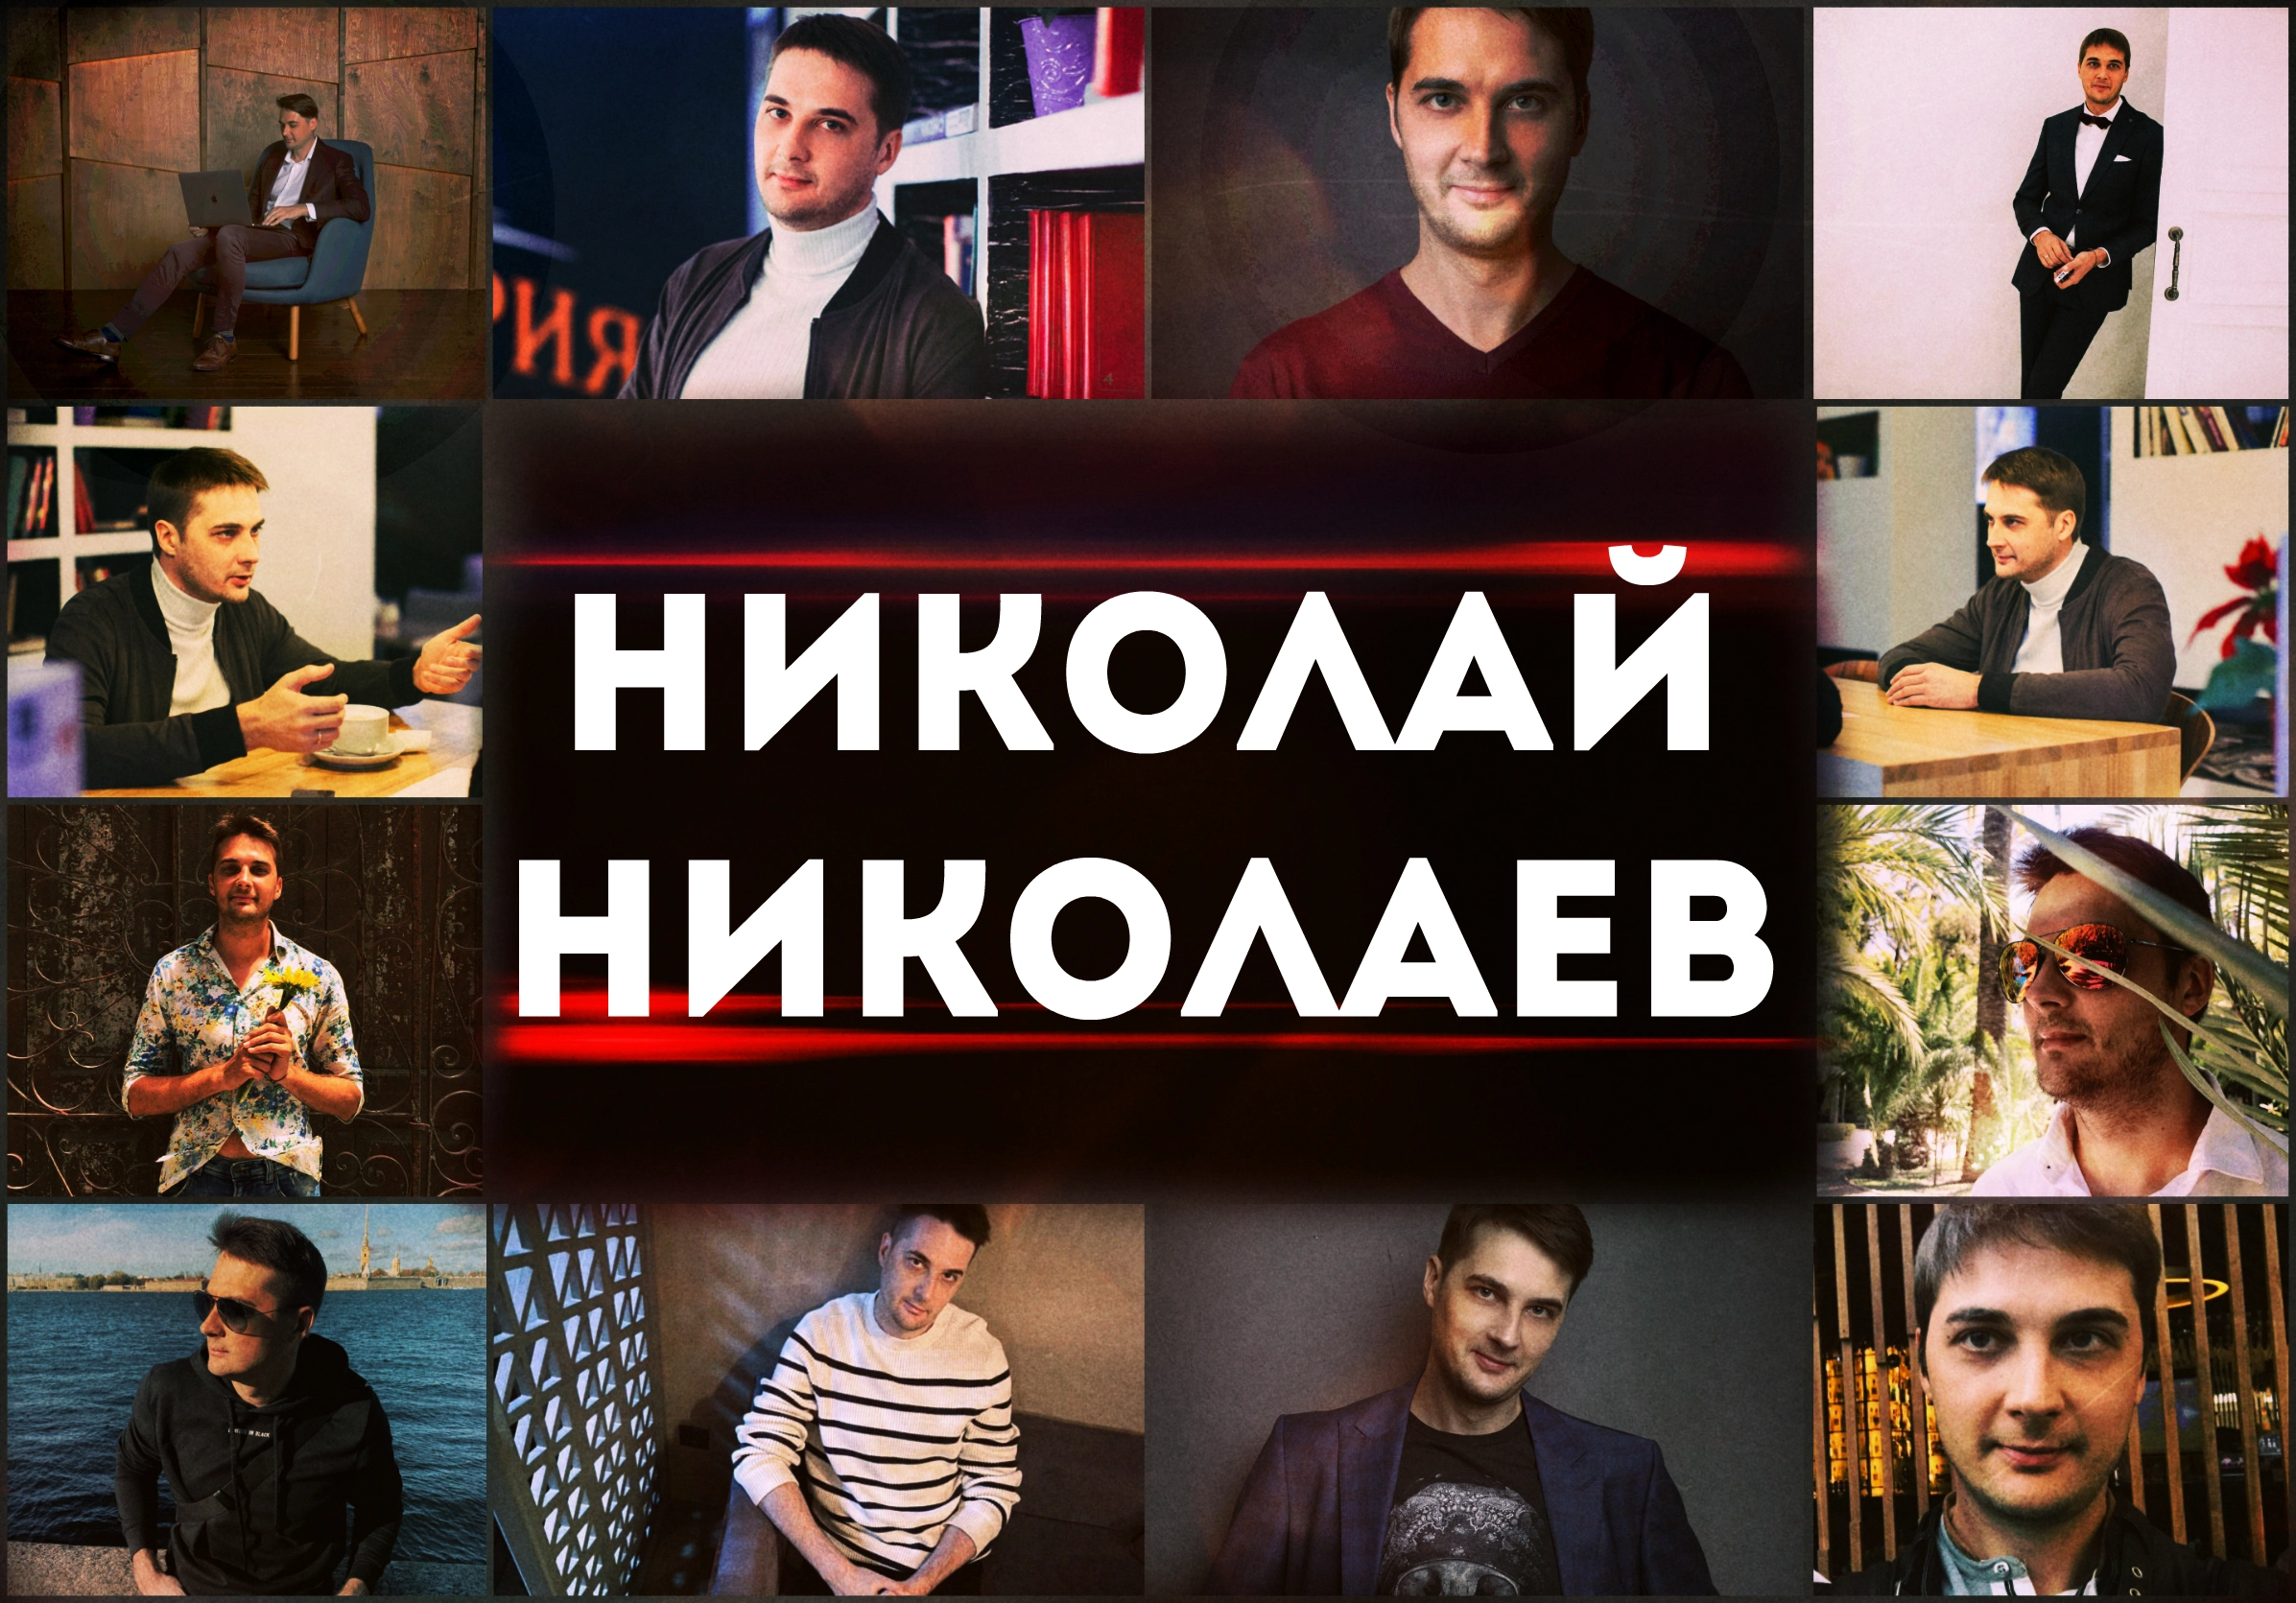 Николай Николаев - серийный предприниматель и бизнес-консультант